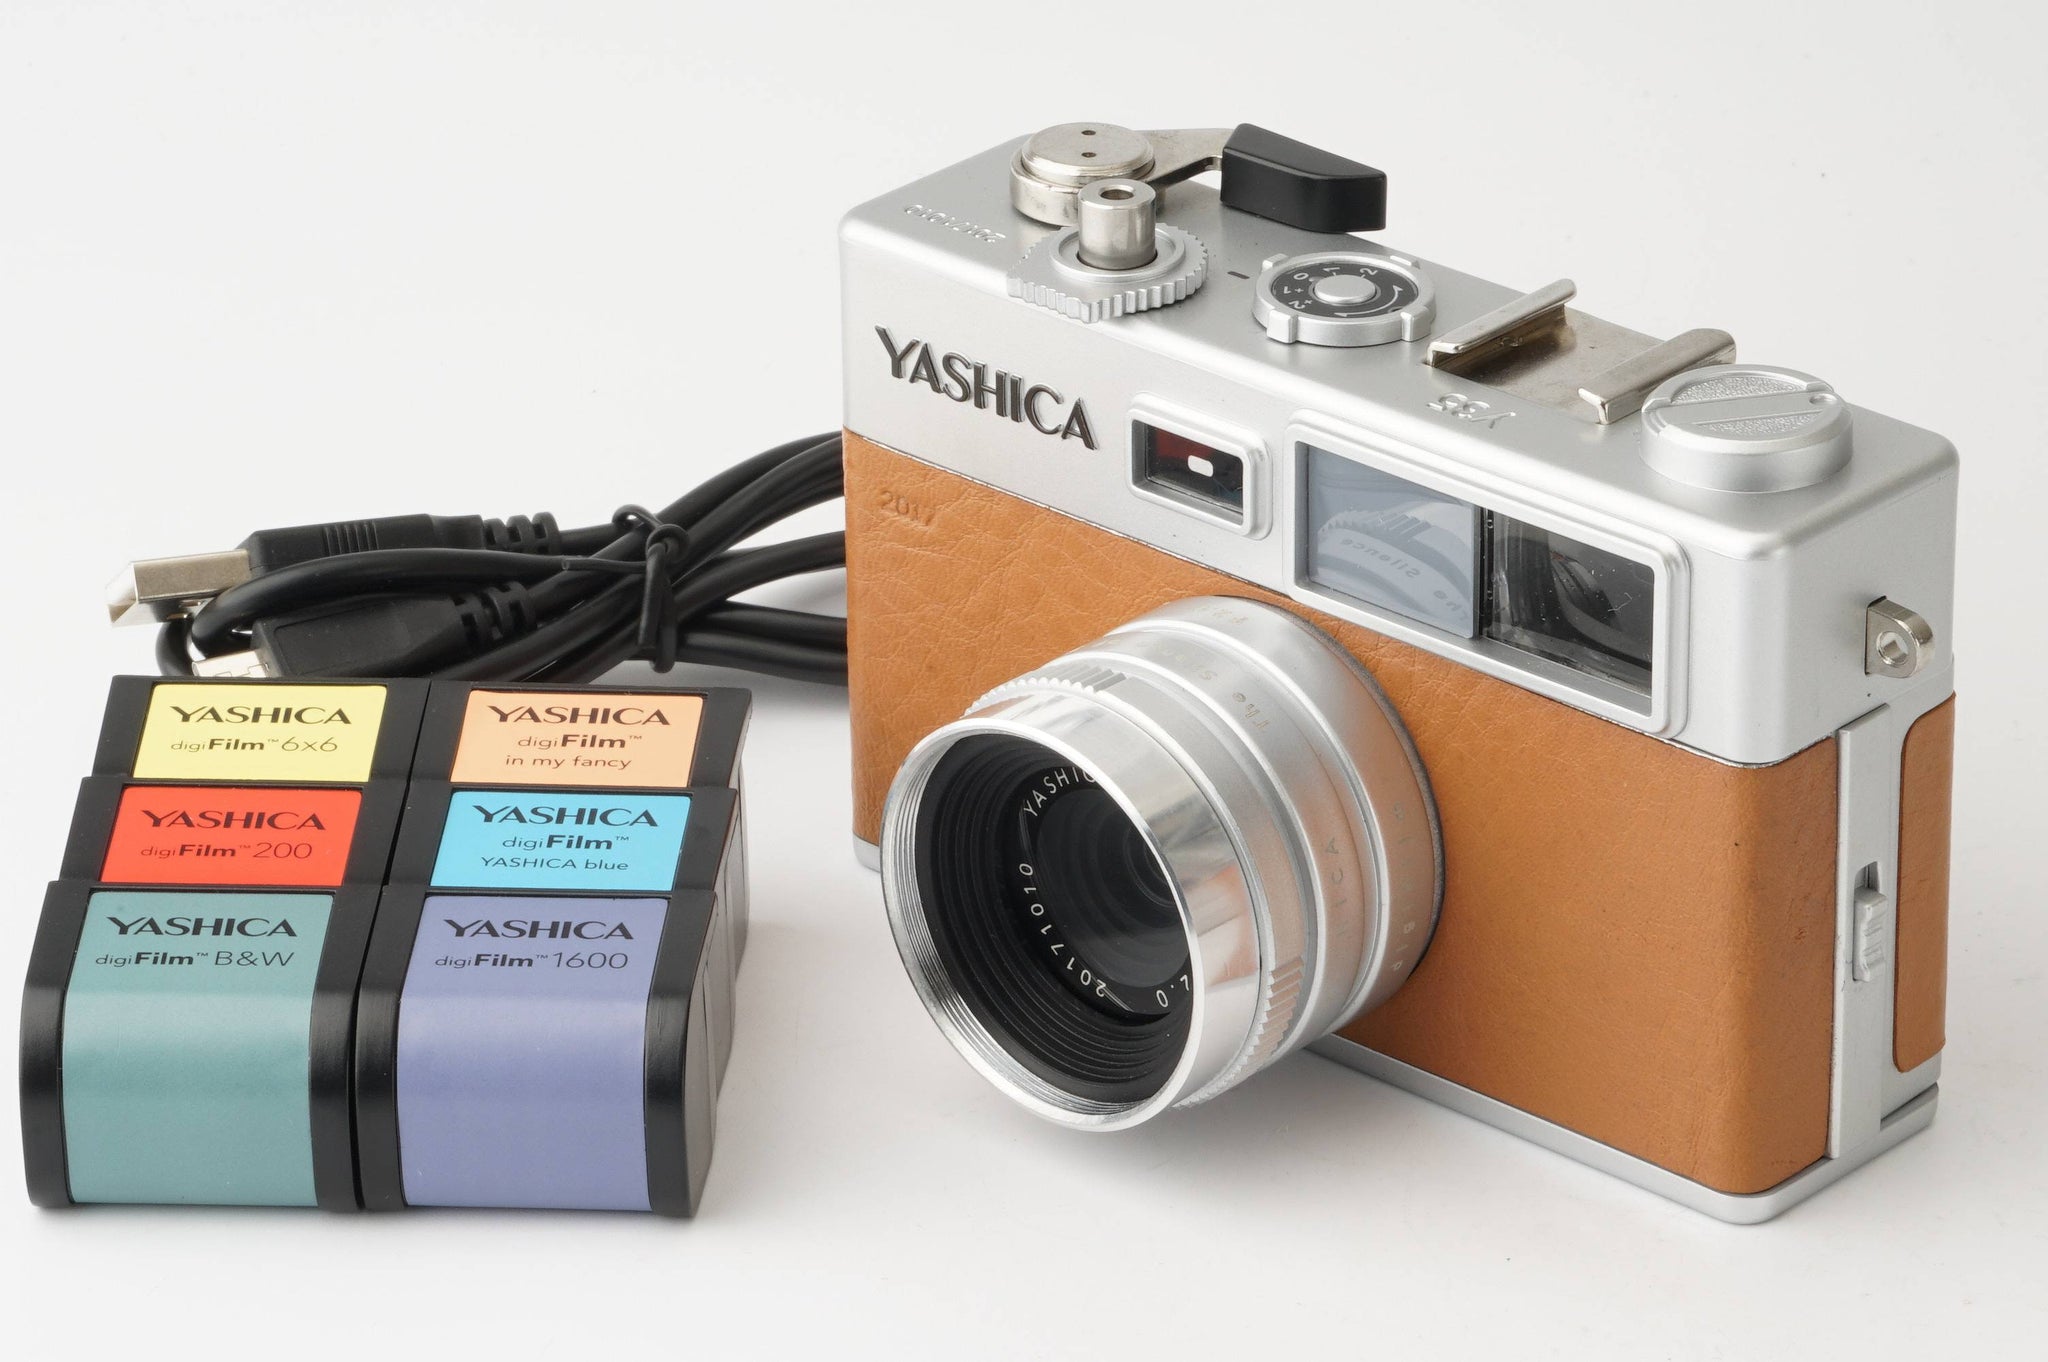 ヤシカ Yashica digiFilm camera y35 / YASHICA F2.0 / デジフィルム6 ...